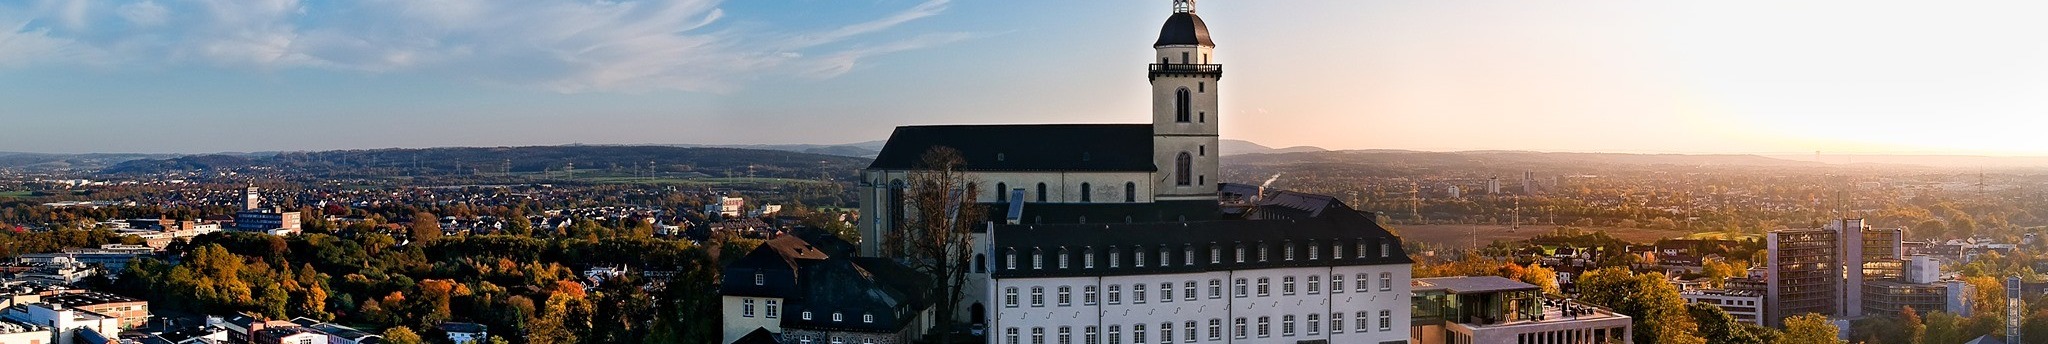 Kreisstadt Siegburg background